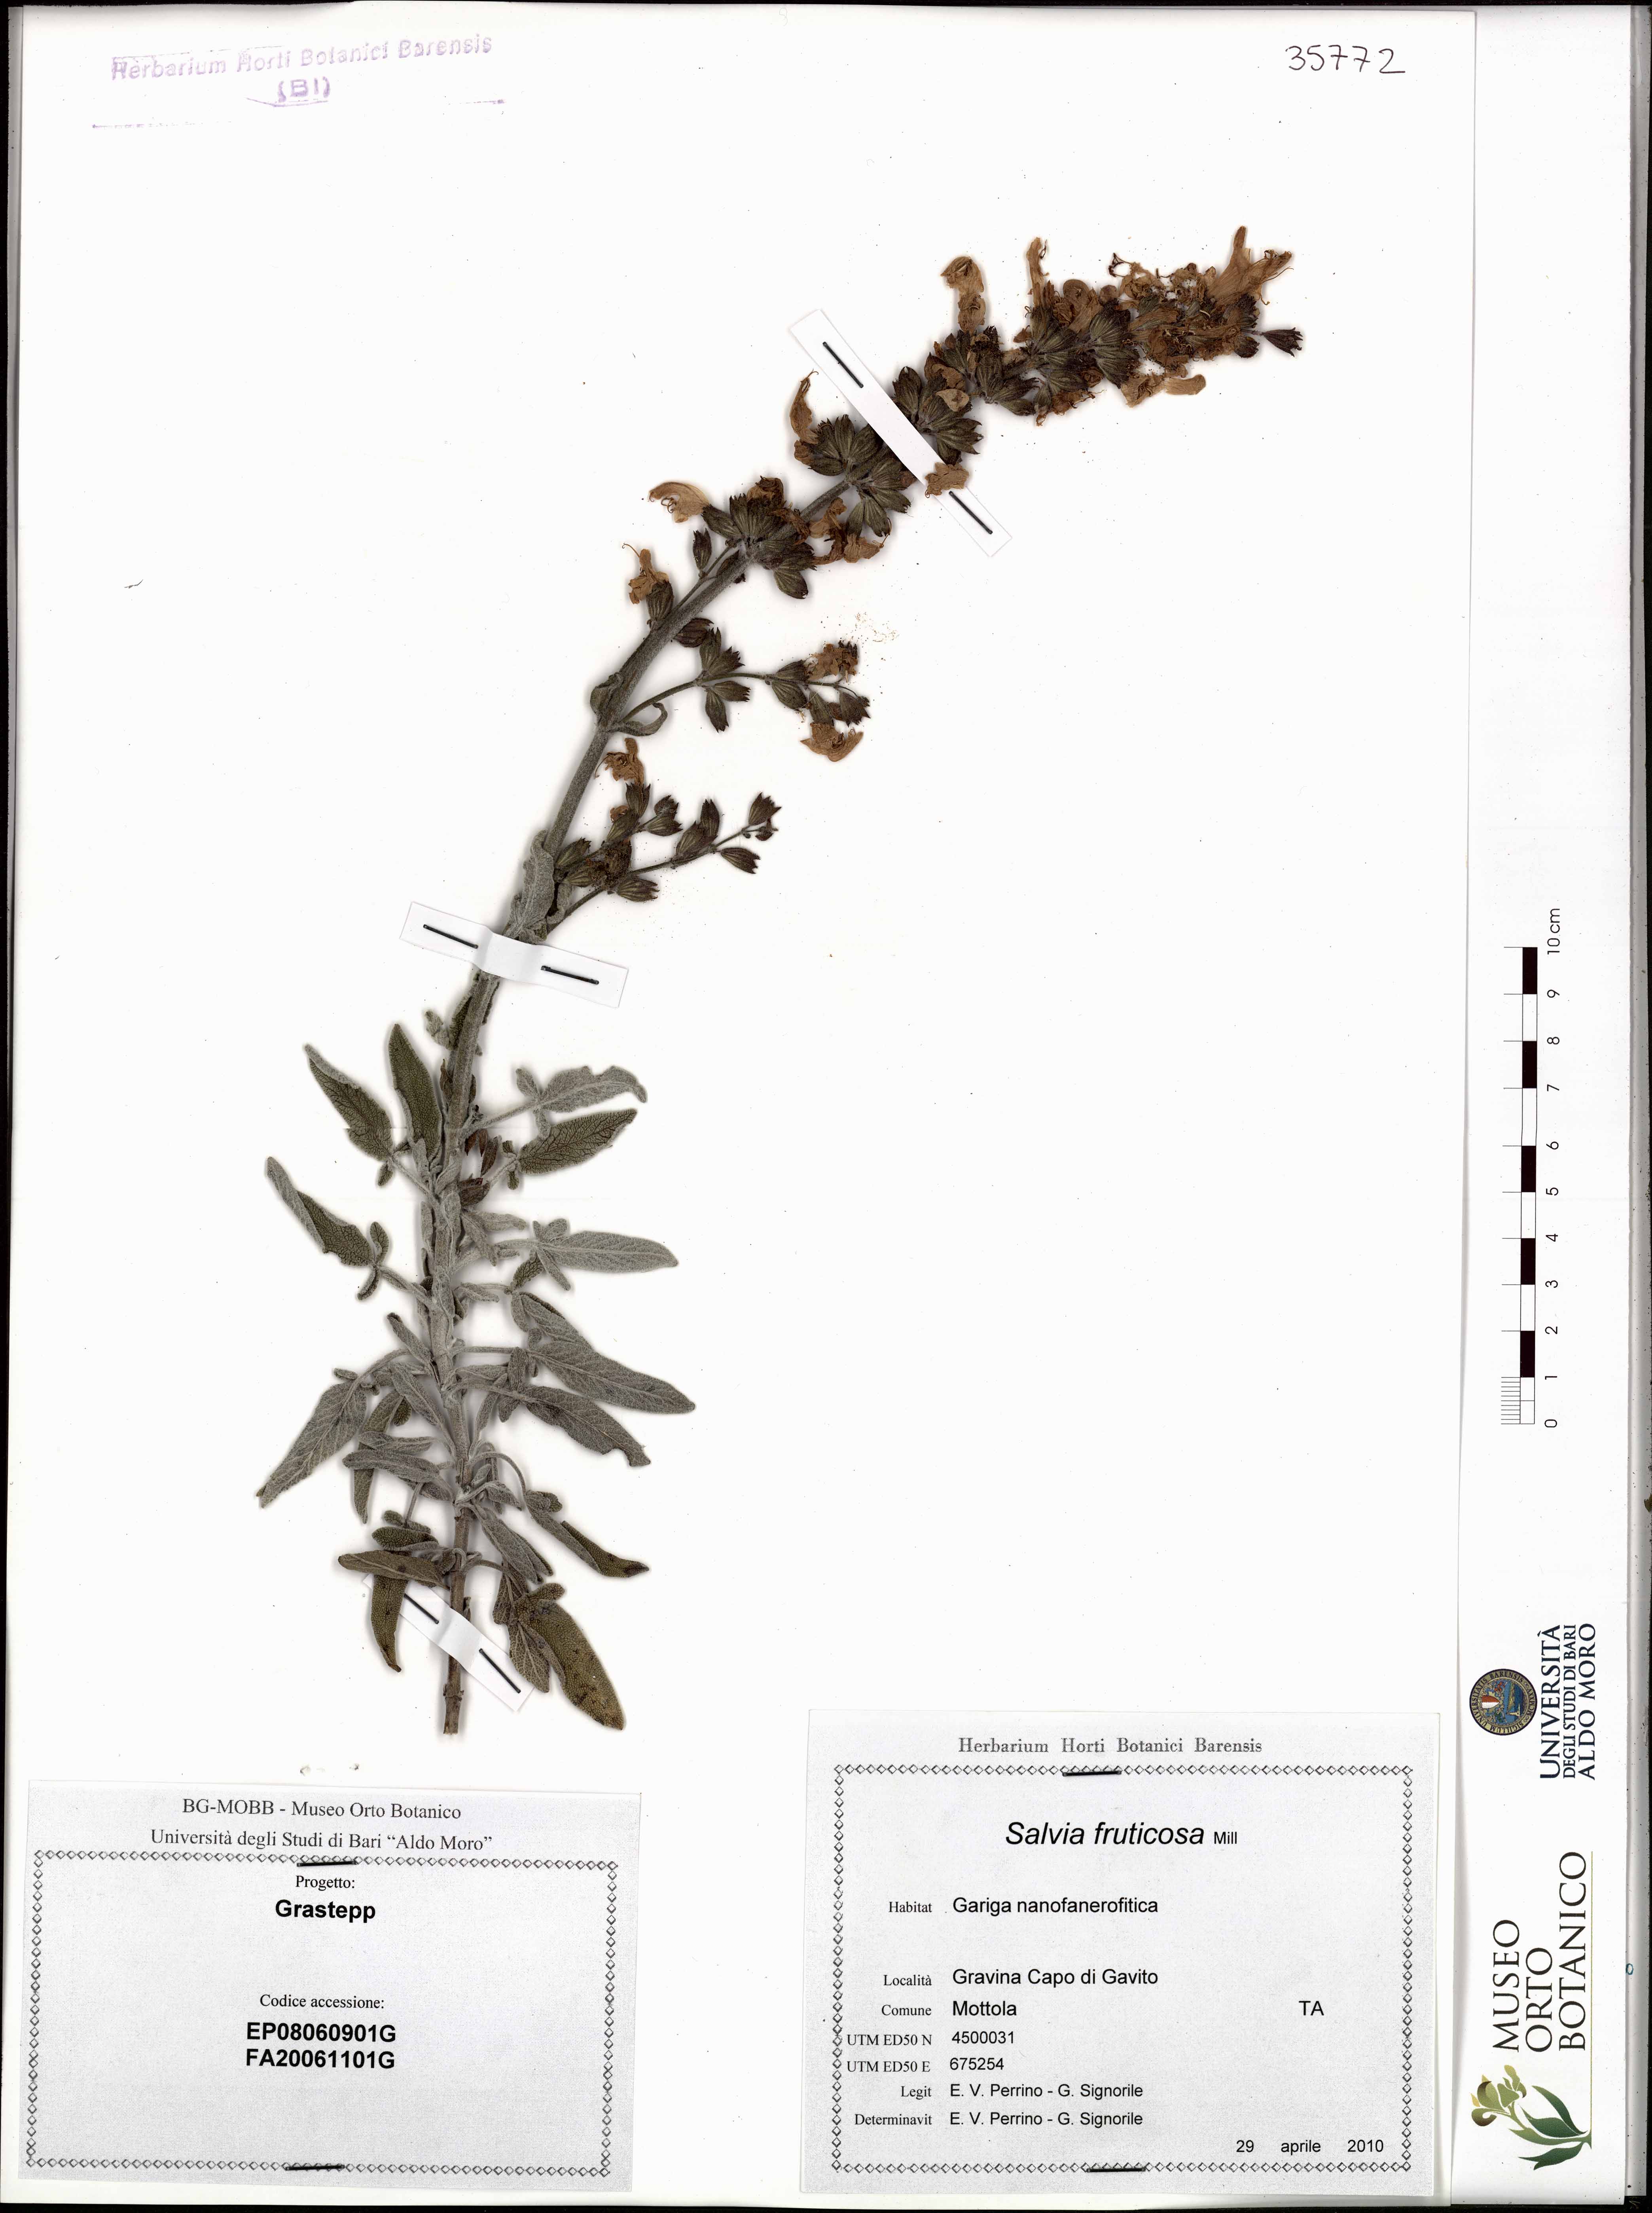 Salvia fruticosa Mill - campione (29/04/2010)